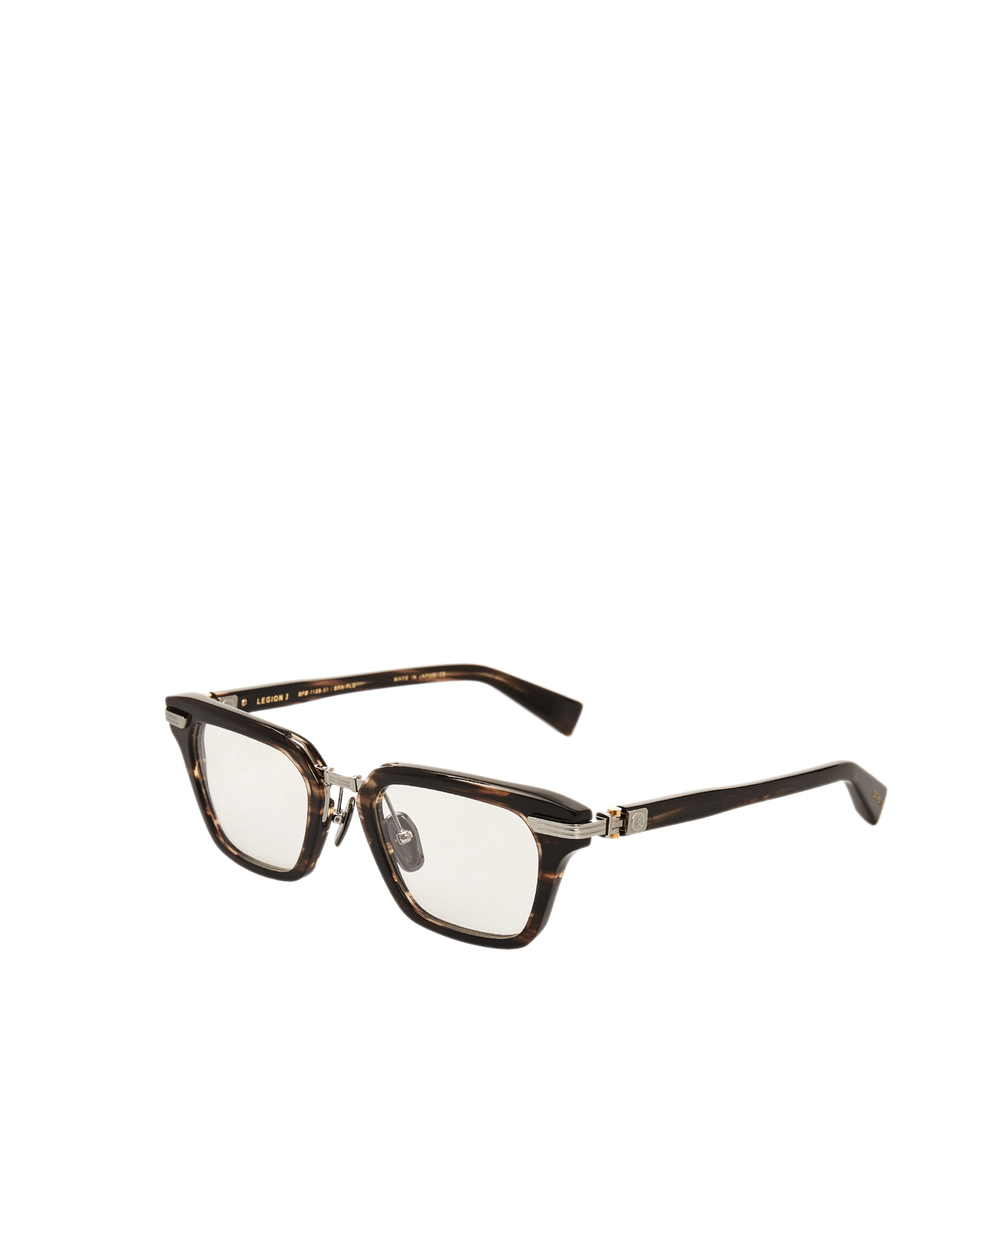 Солнцезащитные очки Balmain BPX-112B-51, коричневый цвет • Купить в интернет-магазине Kameron